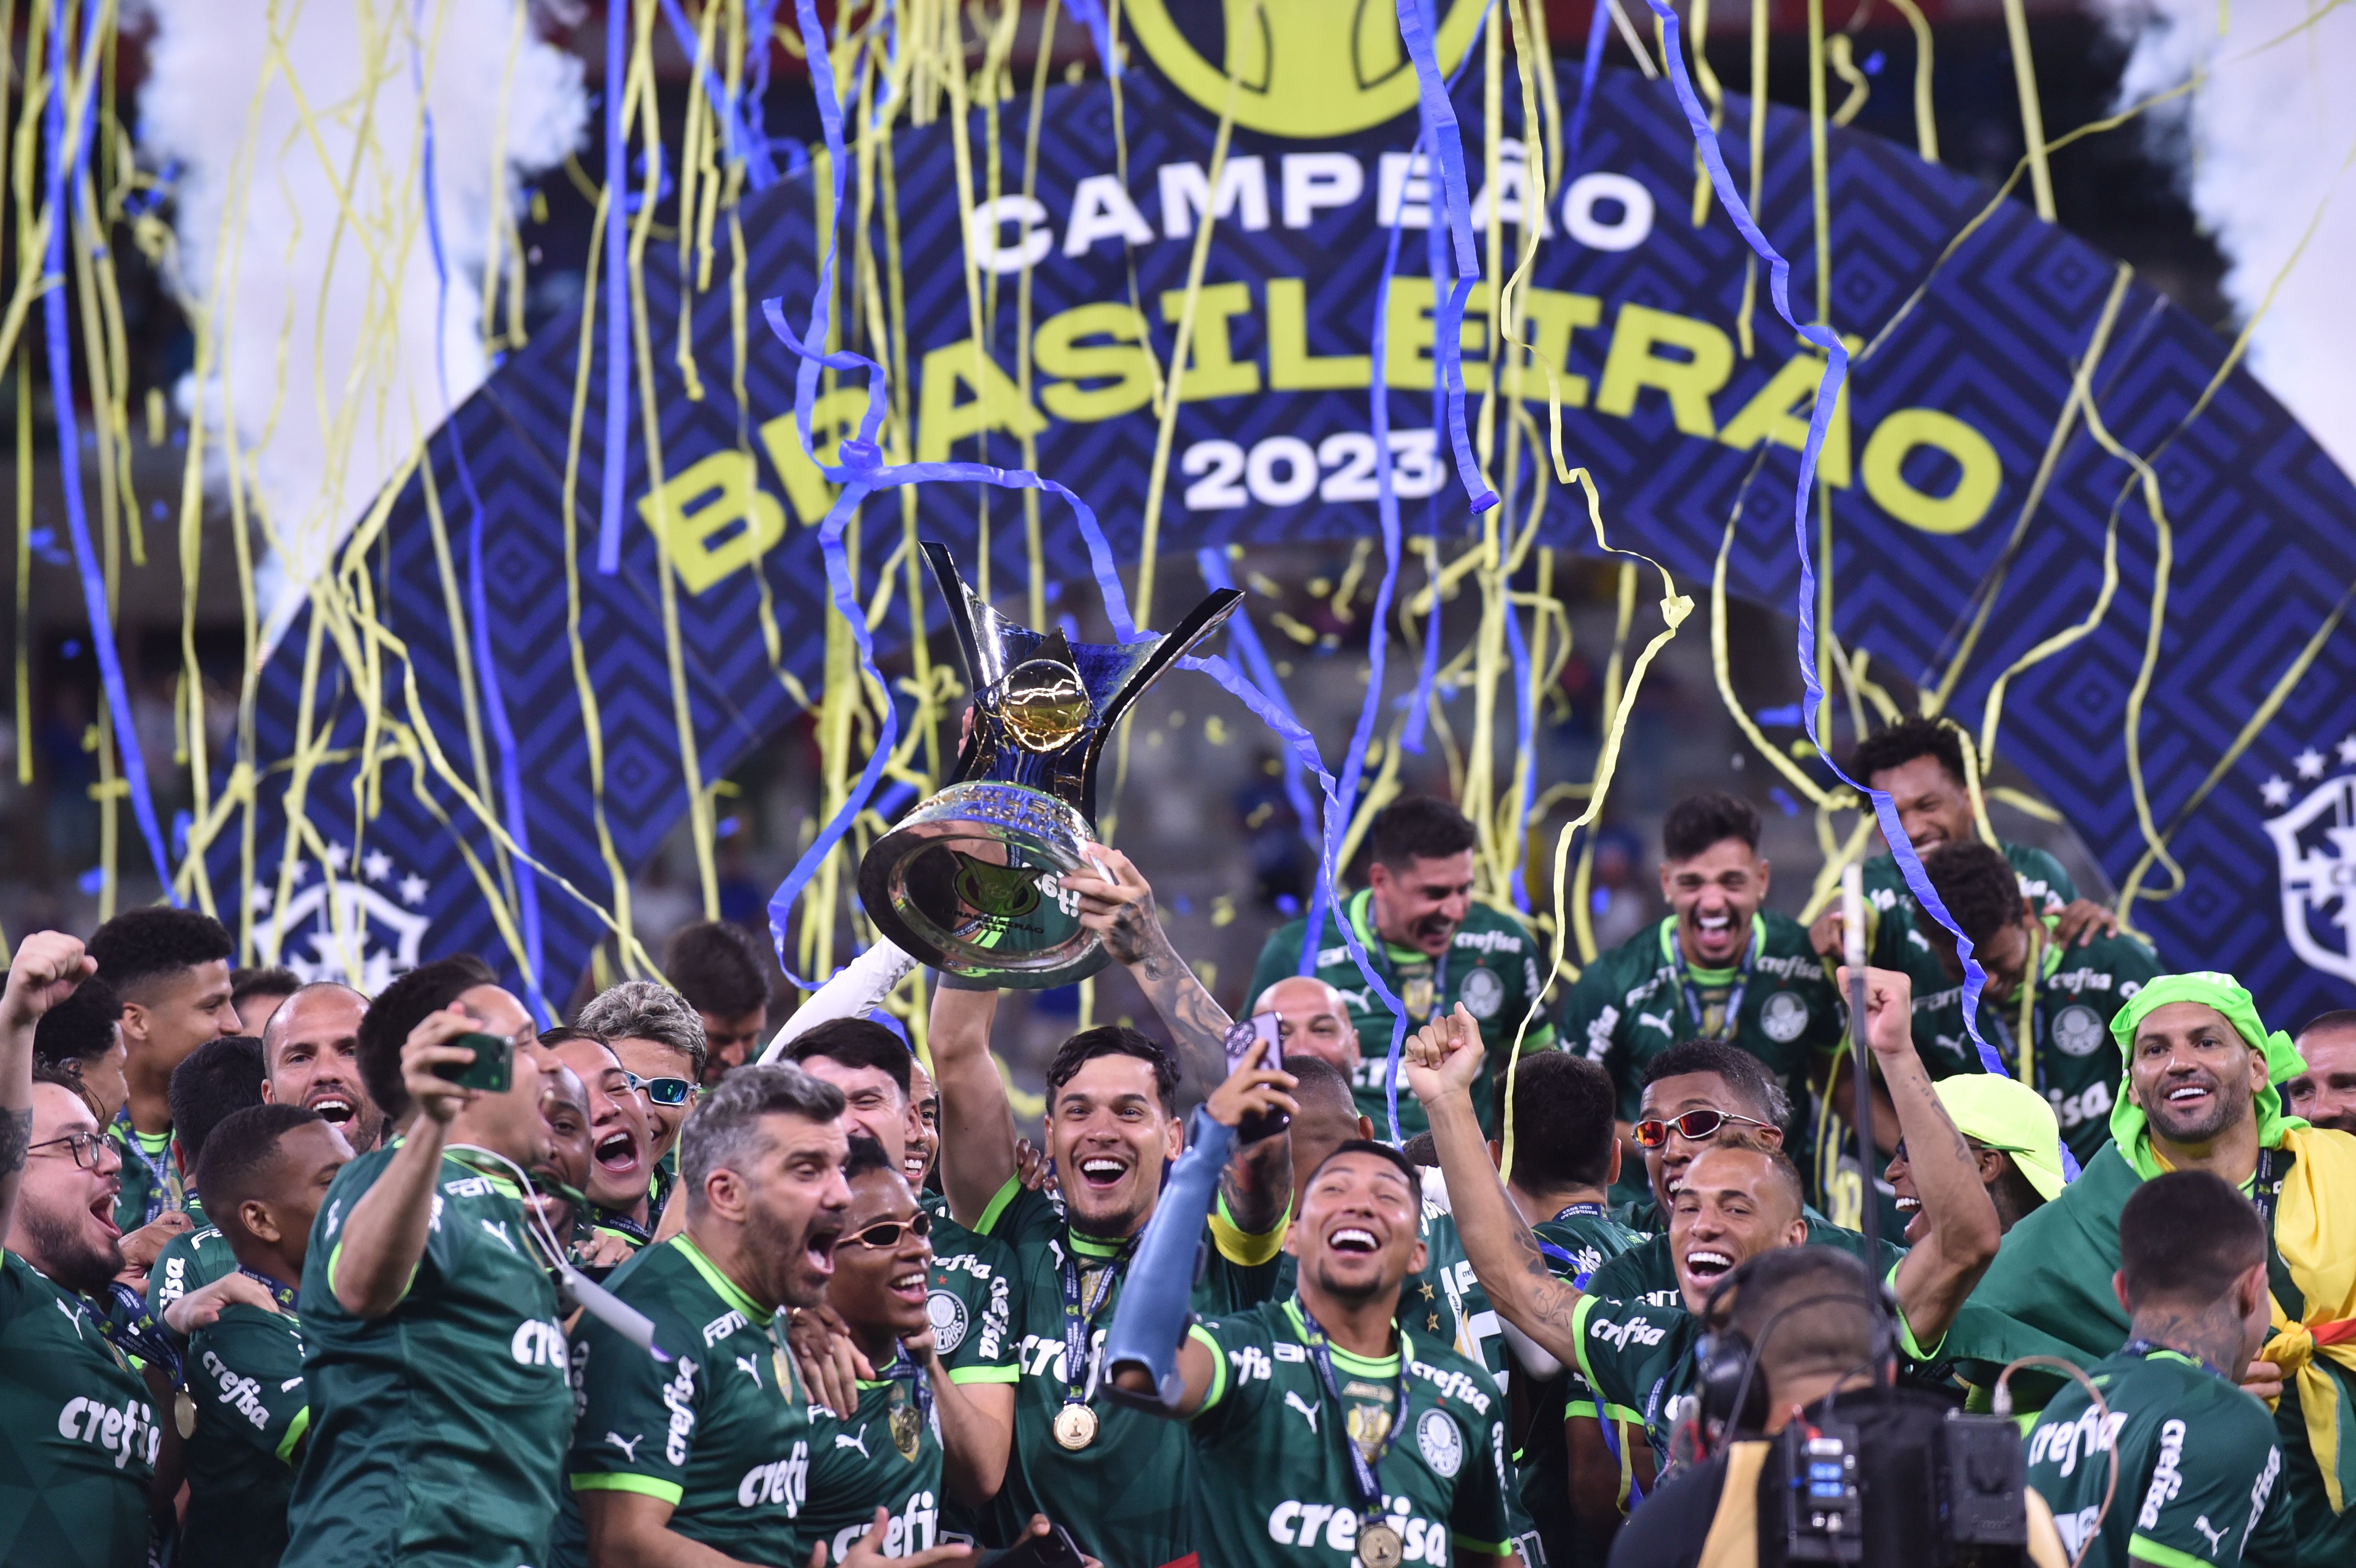 De 'ressaca', Palmeiras e Corinthians empatam em 1 a 1 pelo